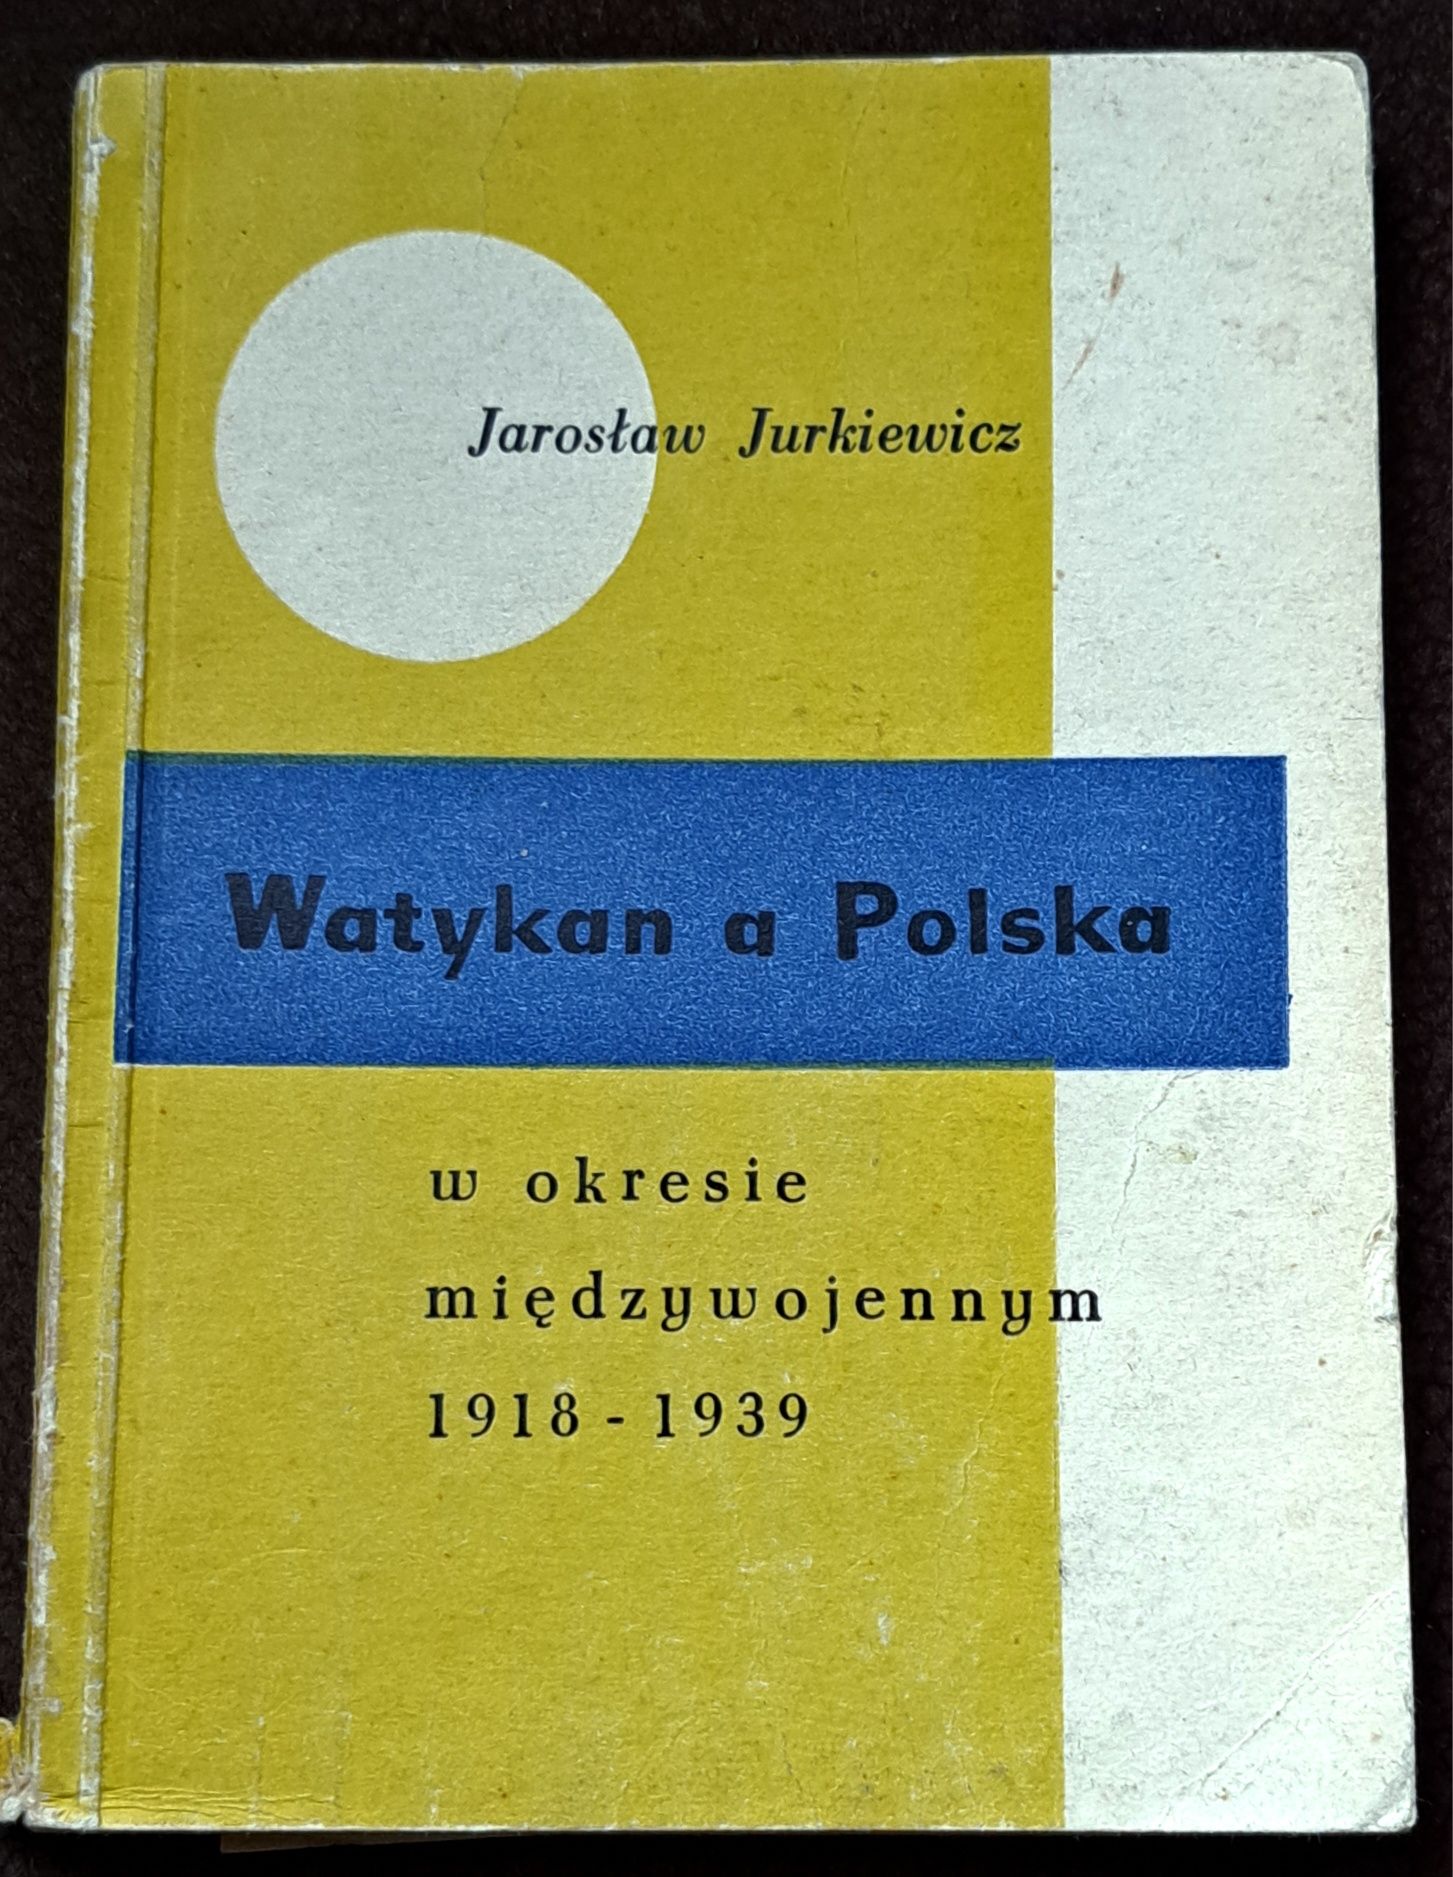 Watykan a Polska w okresie międzywojennym. J. Jurkiewicz.